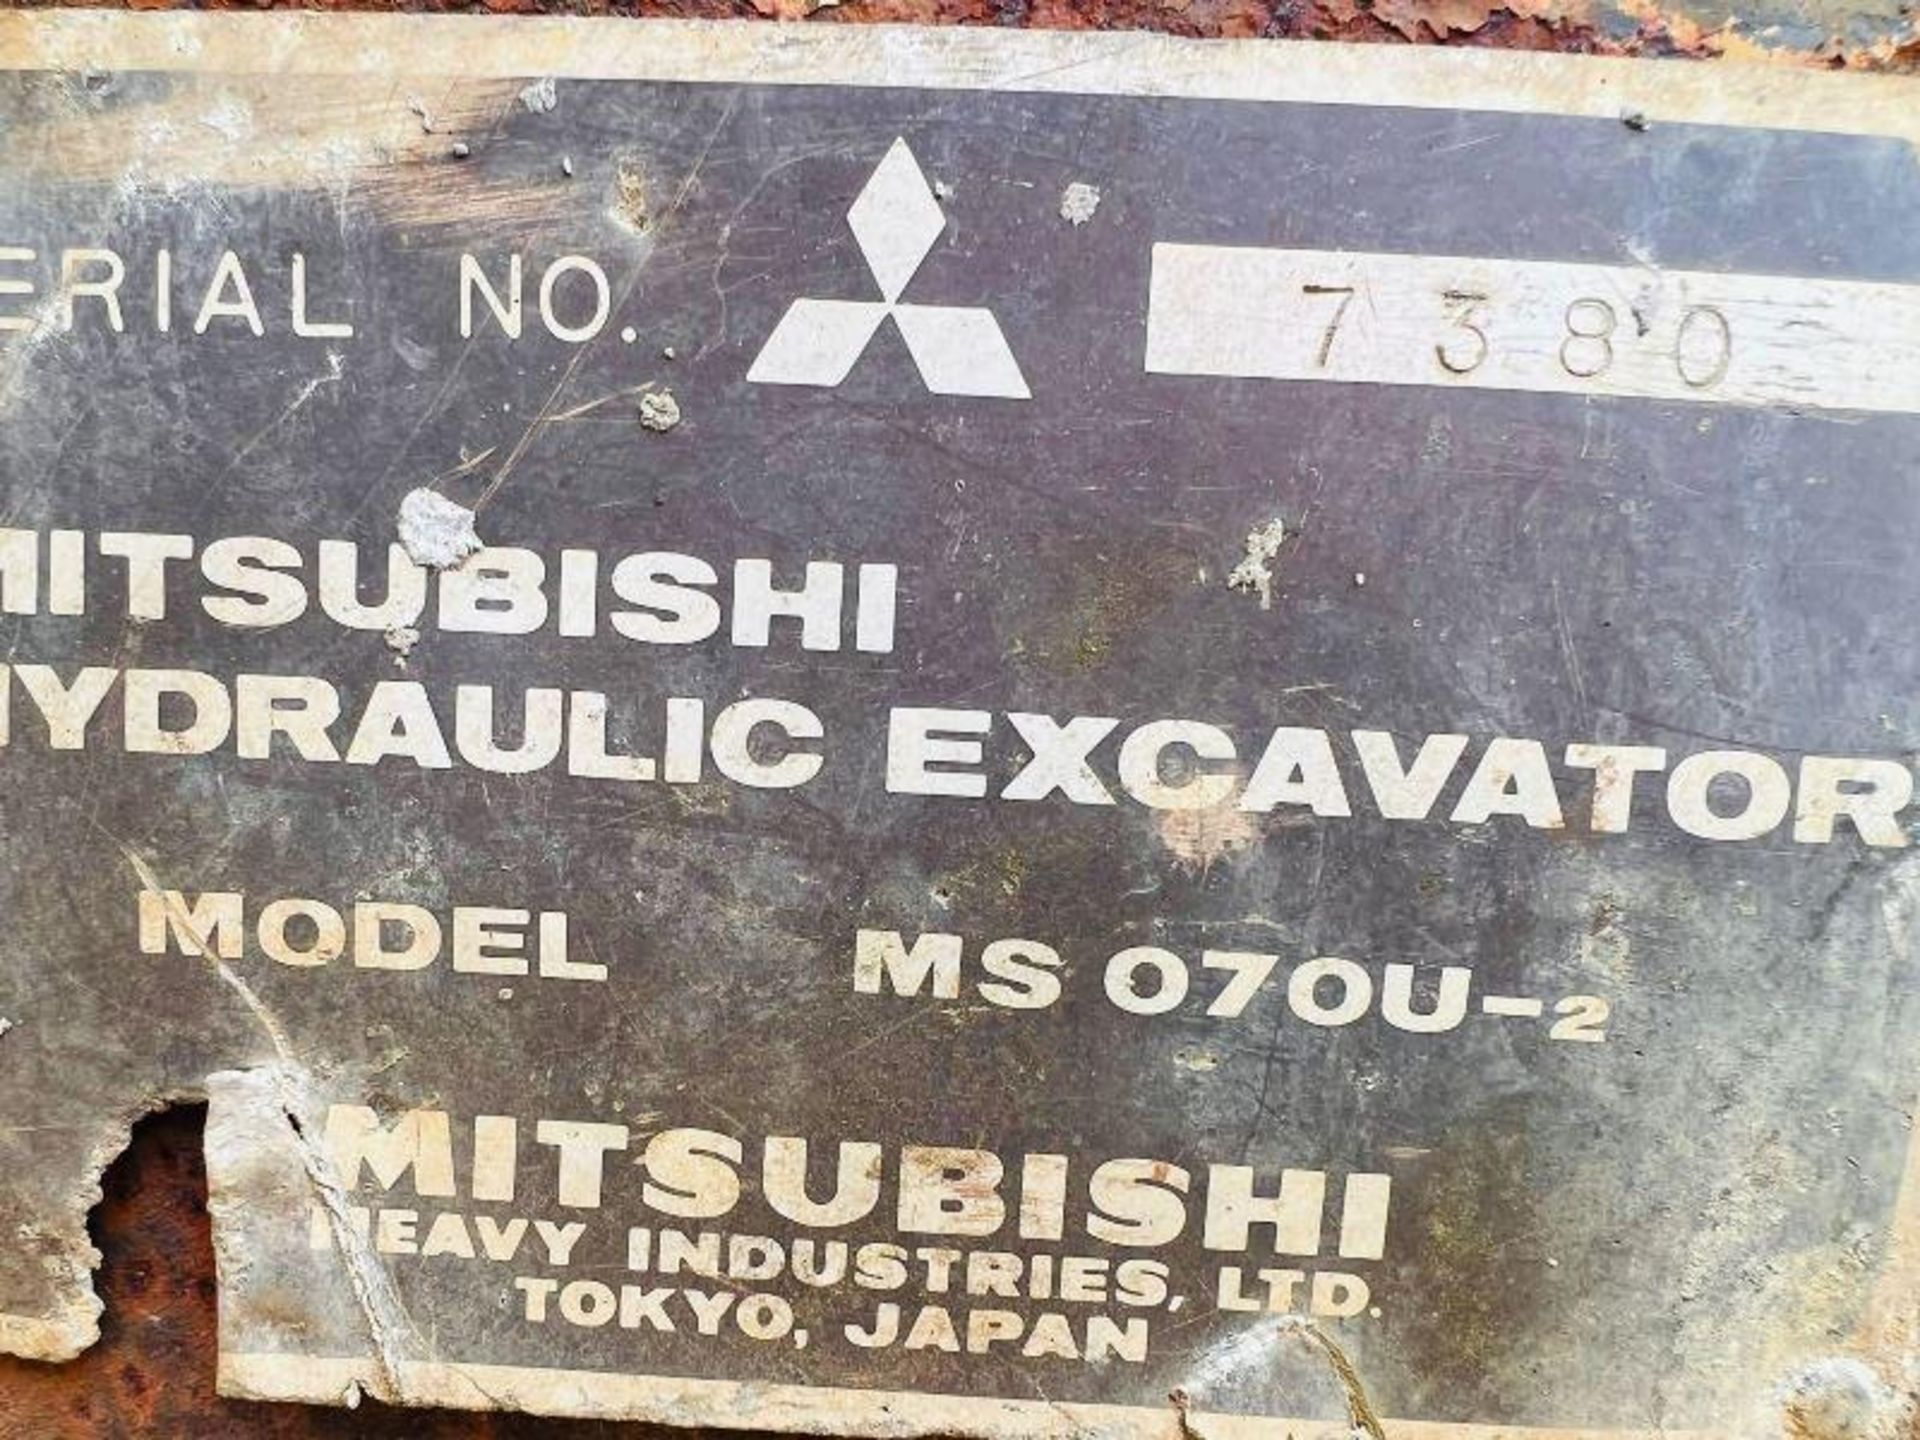 MITSUBISHI MS070U-2 TRACKED EXCAVATOR C/W BUCKET - Image 8 of 11